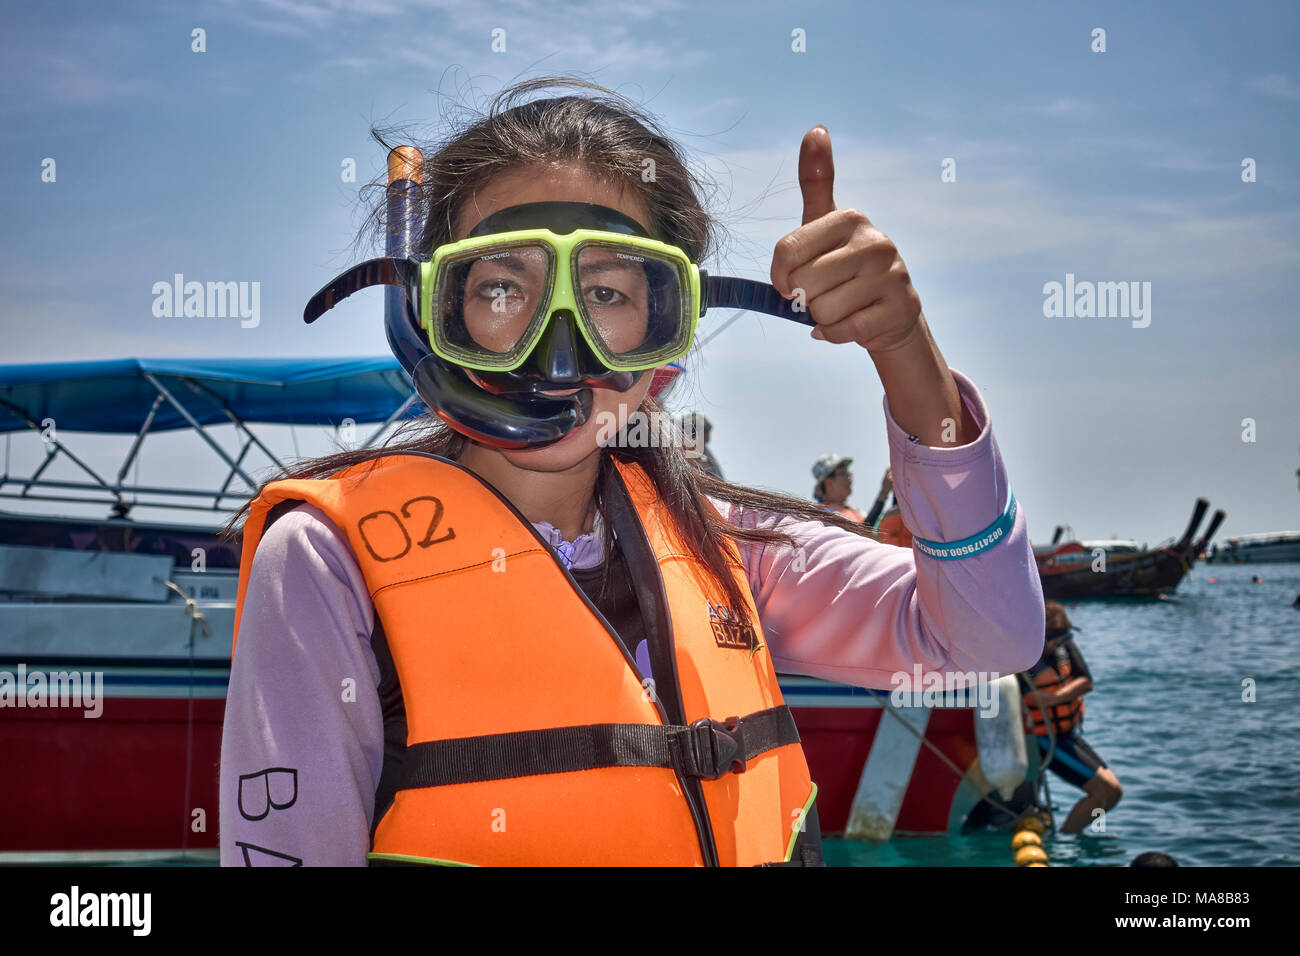 La plongée avec tuba. Femme préparation de plongée et le port d'un masque  et tuba plongée gilet de sécurité Photo Stock - Alamy